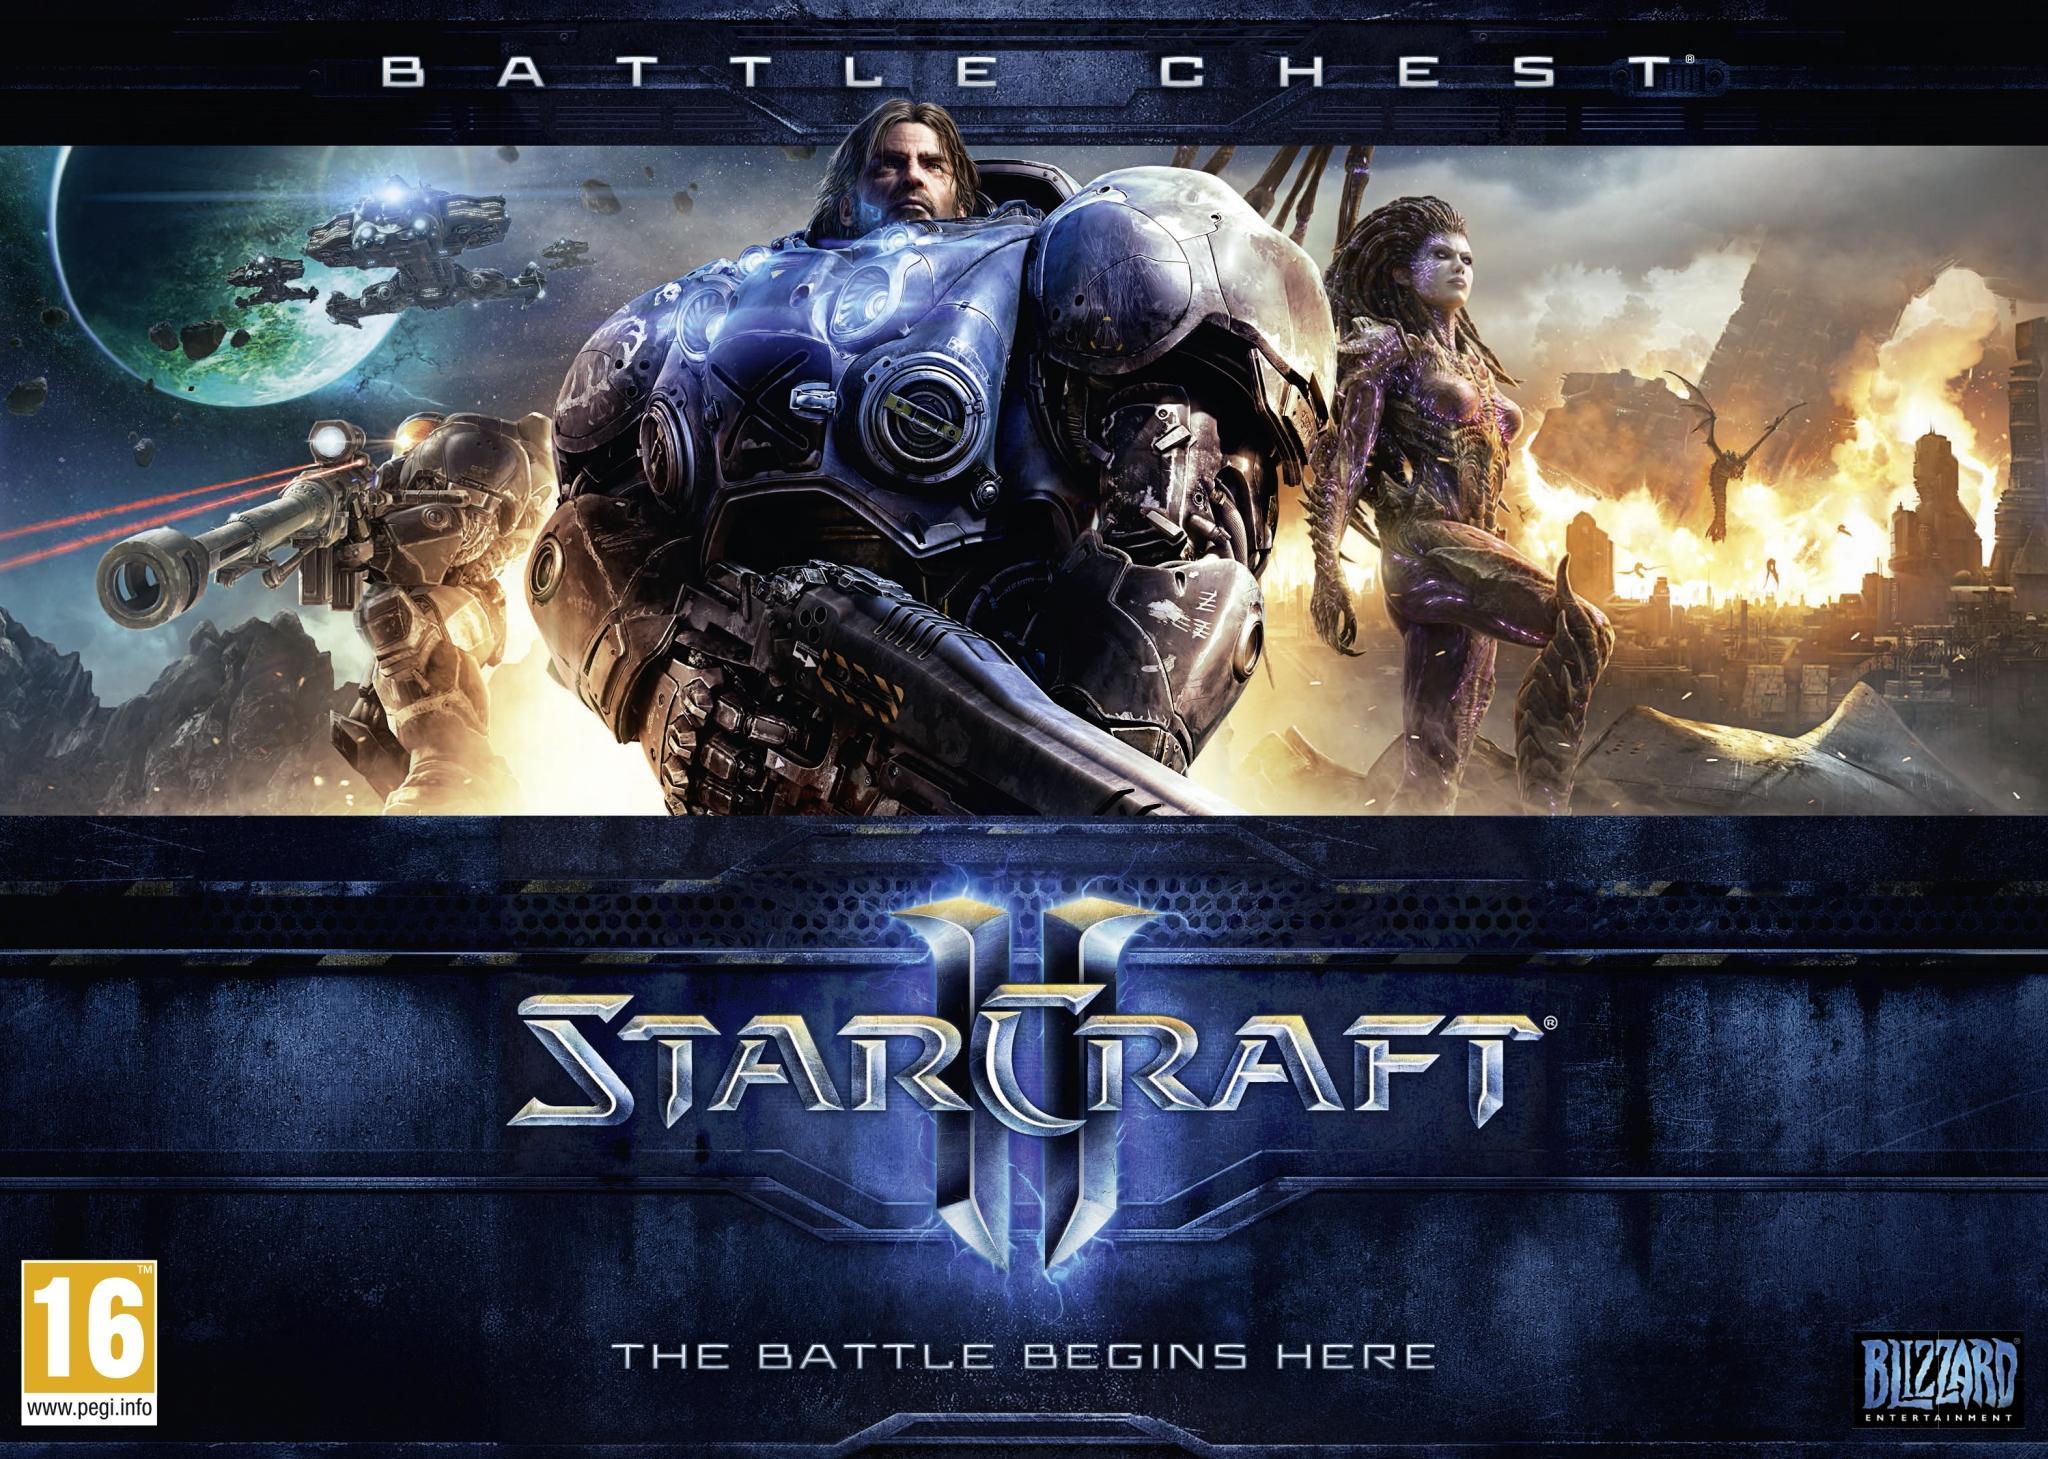 StarCraft II Battlechest (PC), Blizzard Entertainment